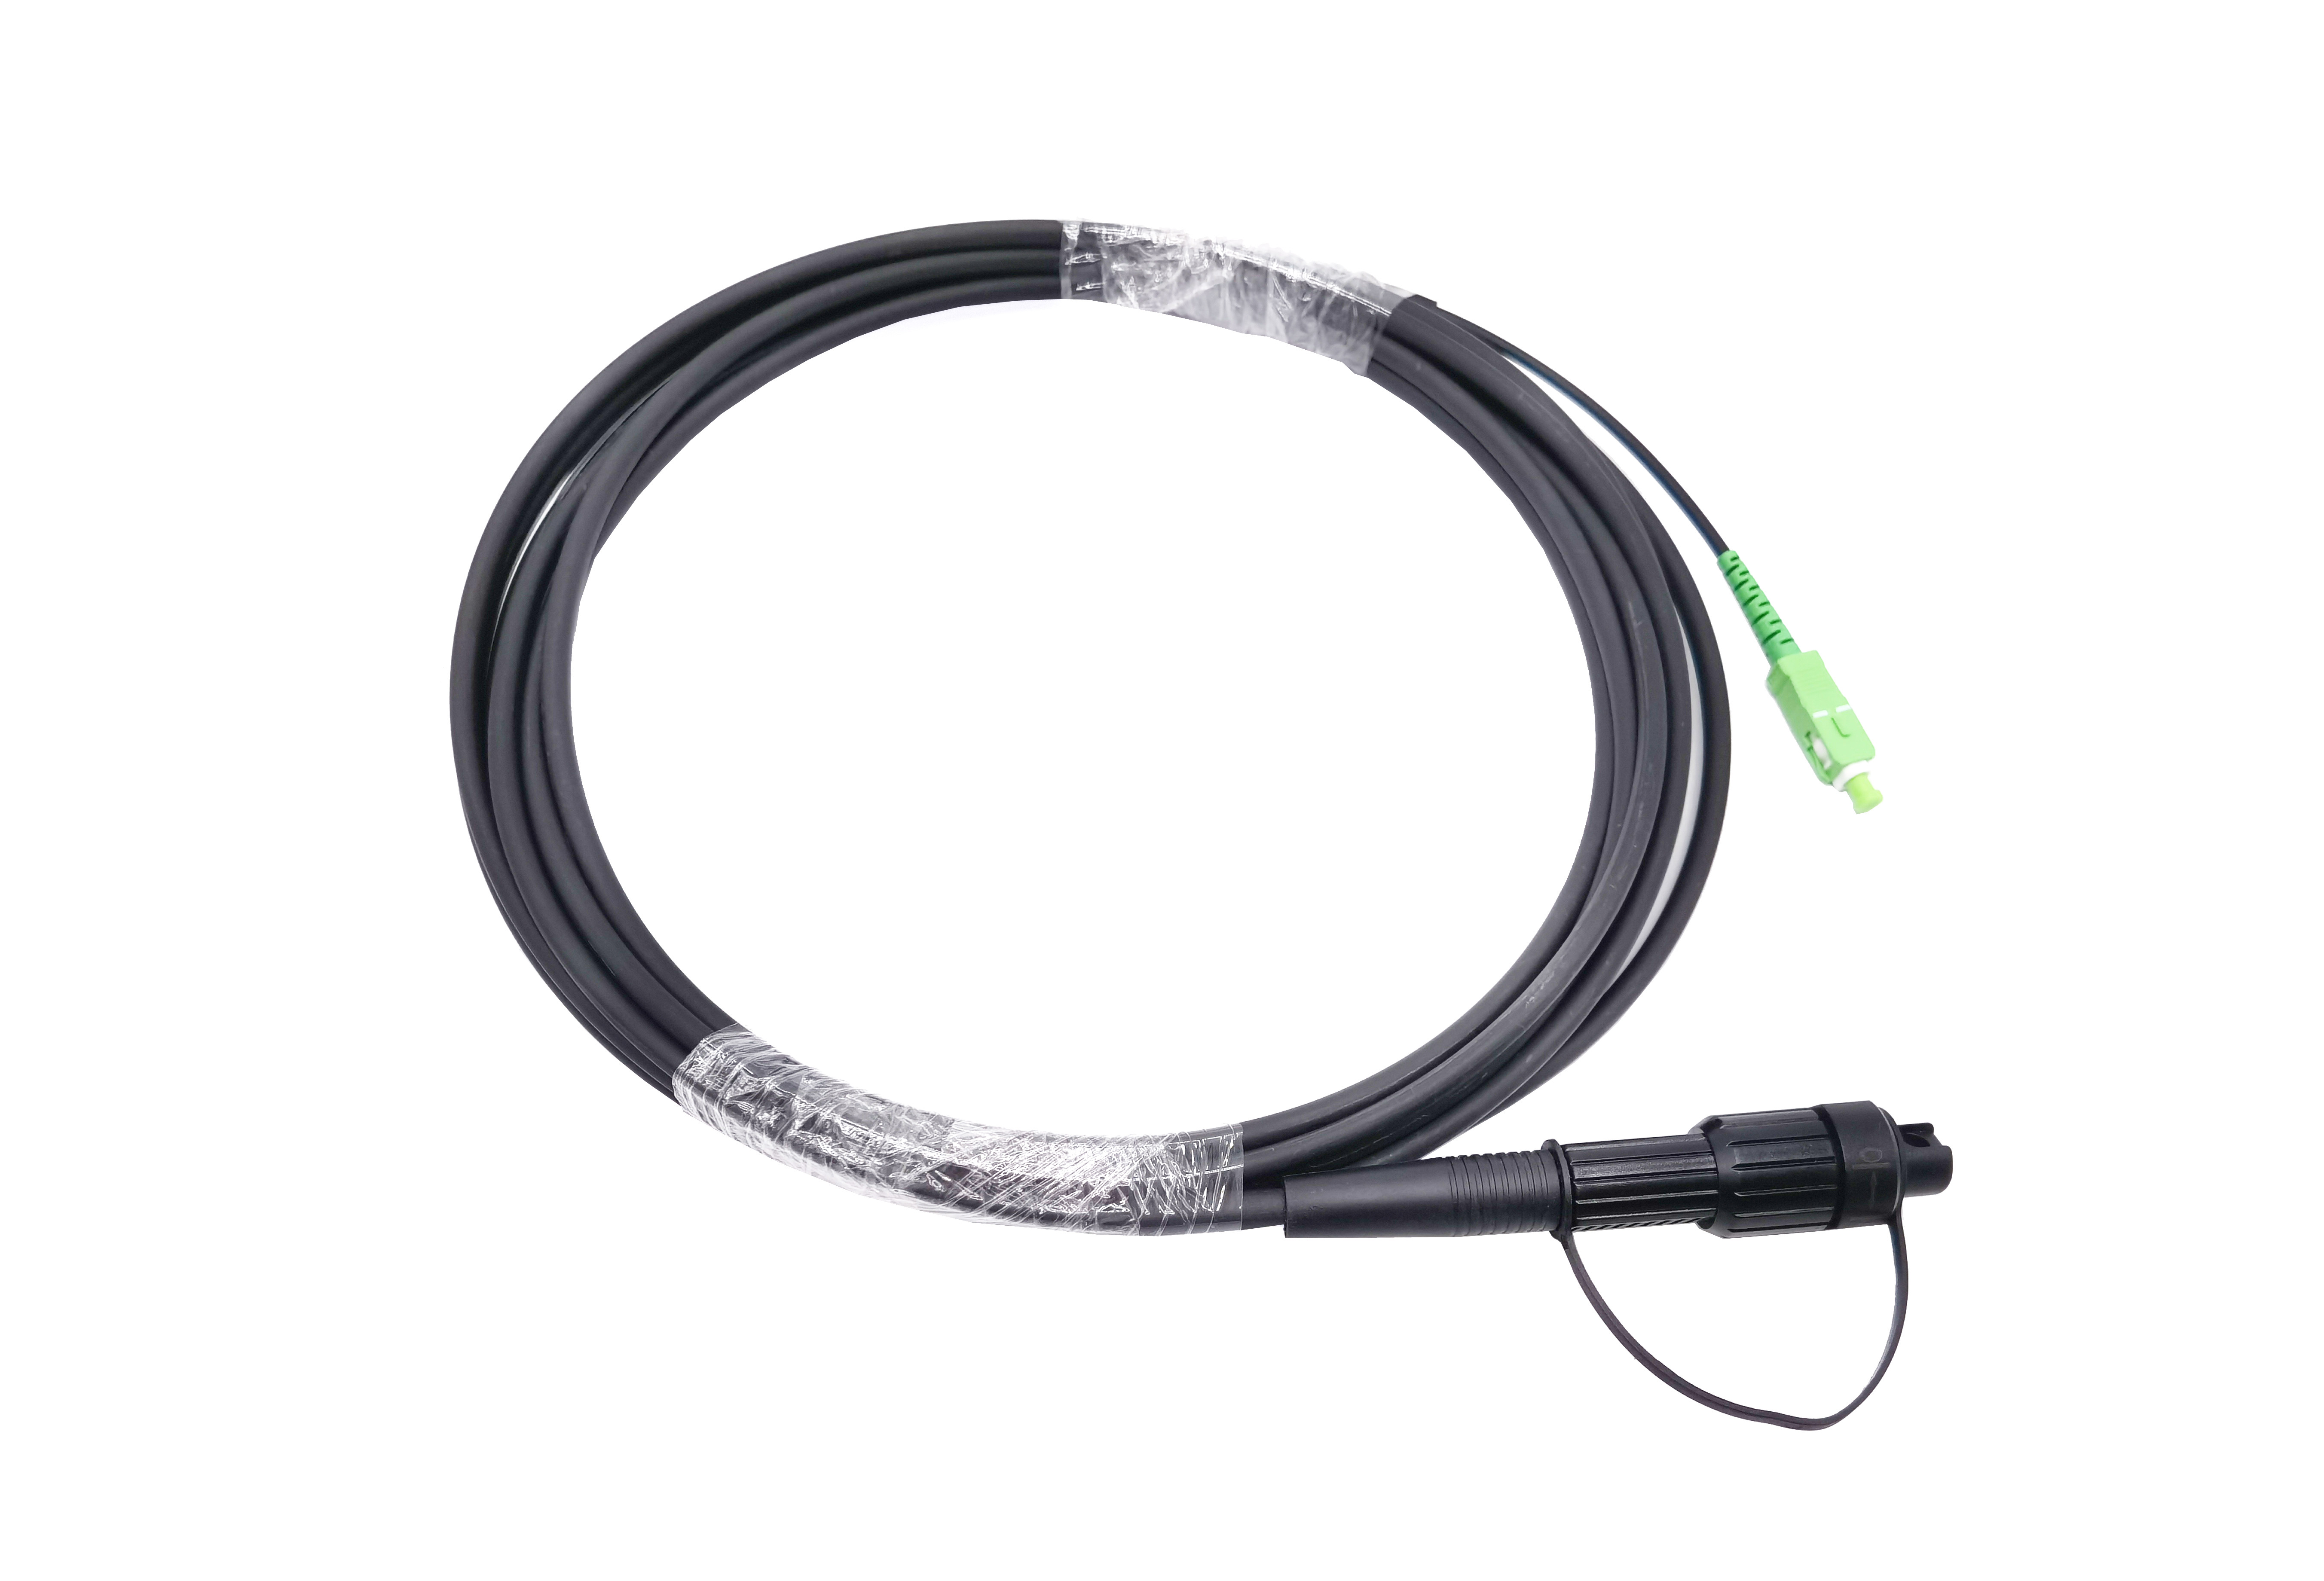  Pre Connectorized SC APC FTTA Fiber Optic Cable 5.0mm G657A2 LSZH 5M Black